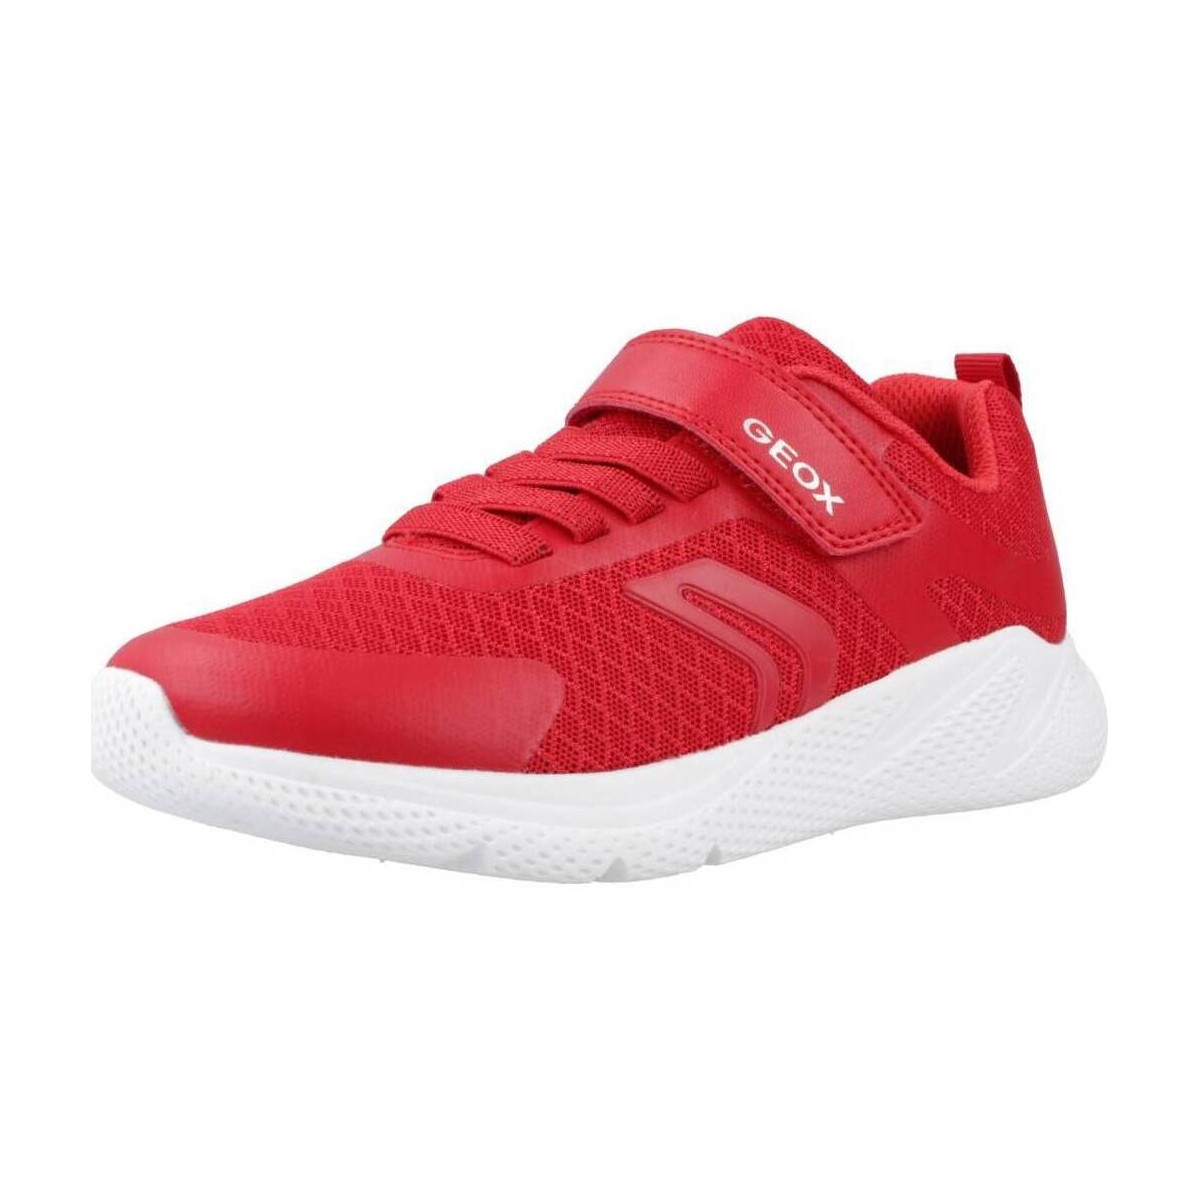 Παπούτσια Αγόρι Χαμηλά Sneakers Geox J SPRINTYE B. A Red